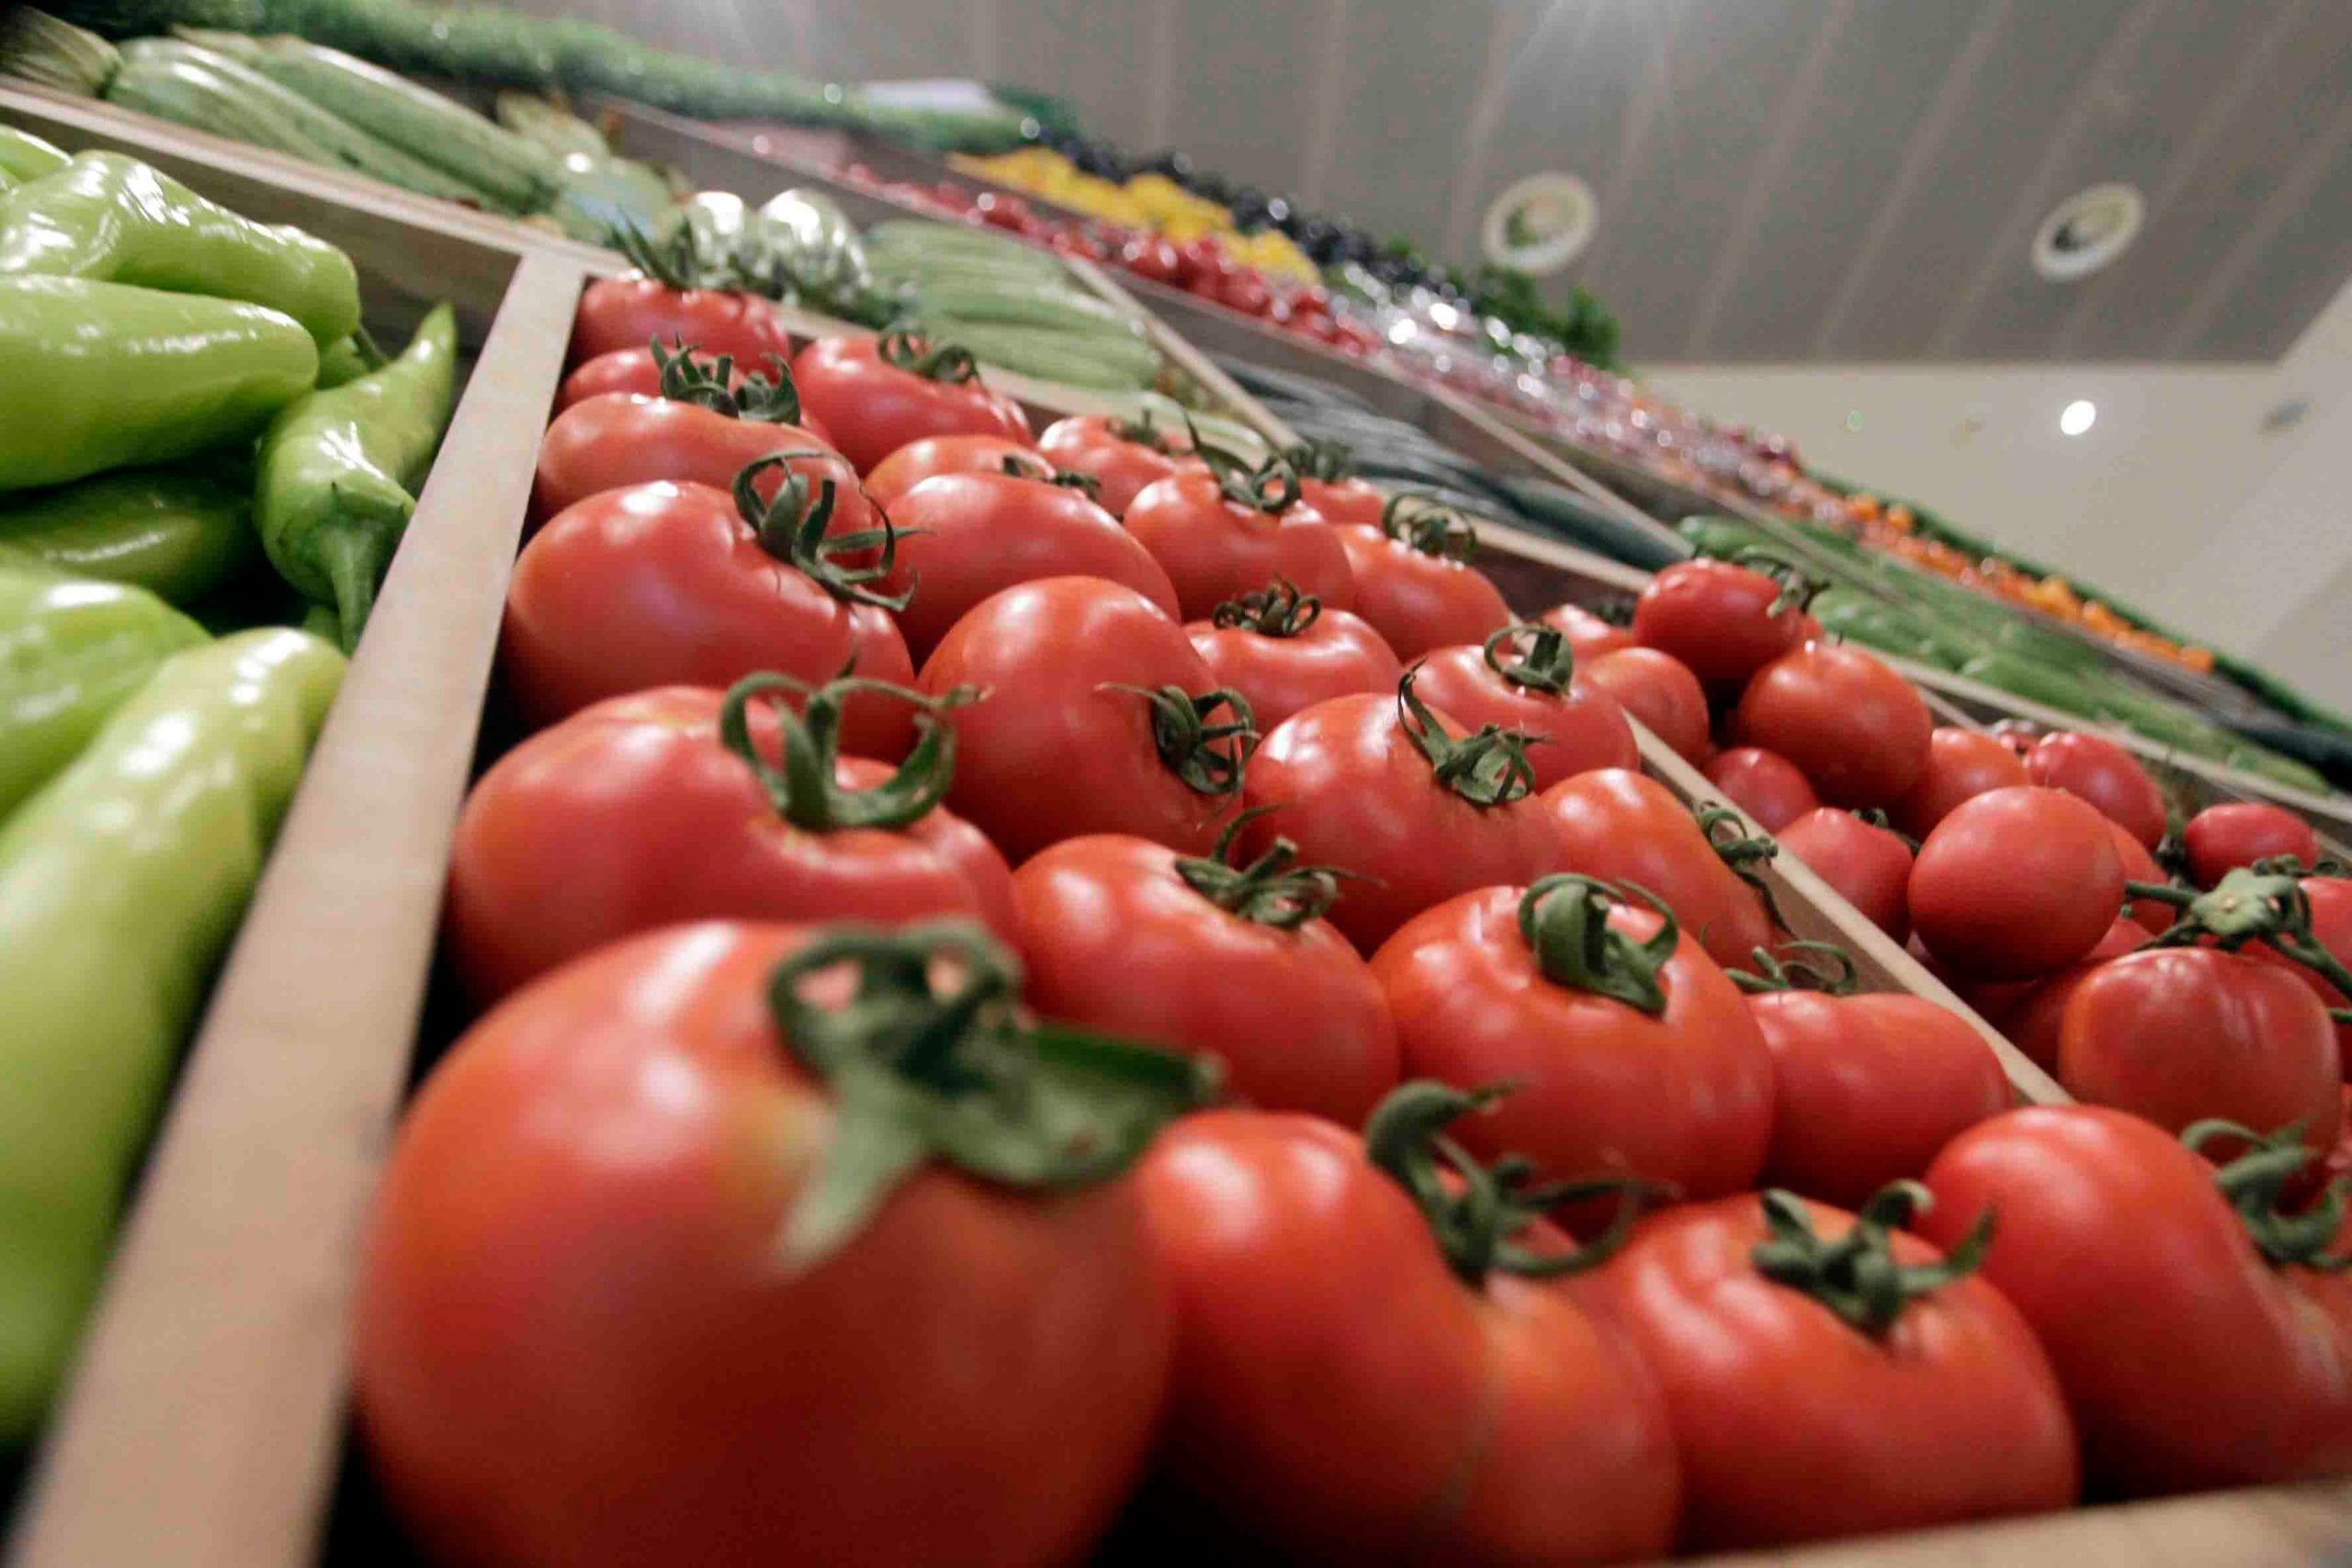 أسعار الطماطم تواصل الانخفاض لتصل إلى 3.5 دراهم بأسواق الجملة بإنزكان والبيضاء